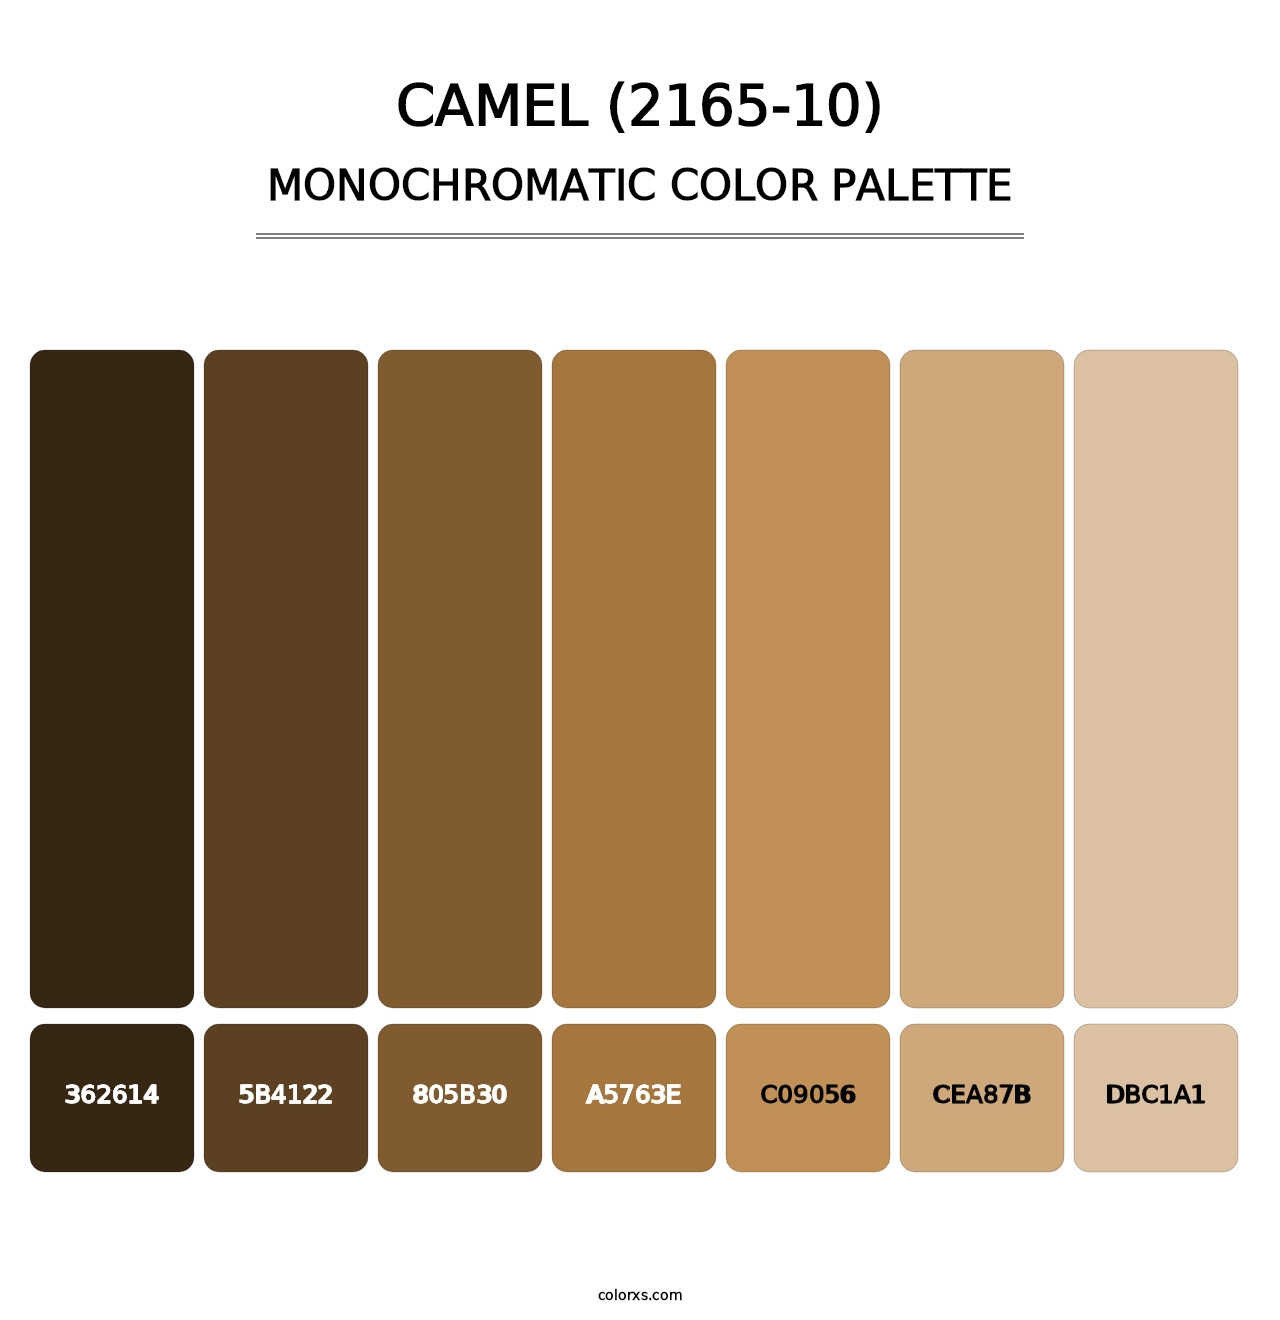 Camel (2165-10) - Monochromatic Color Palette